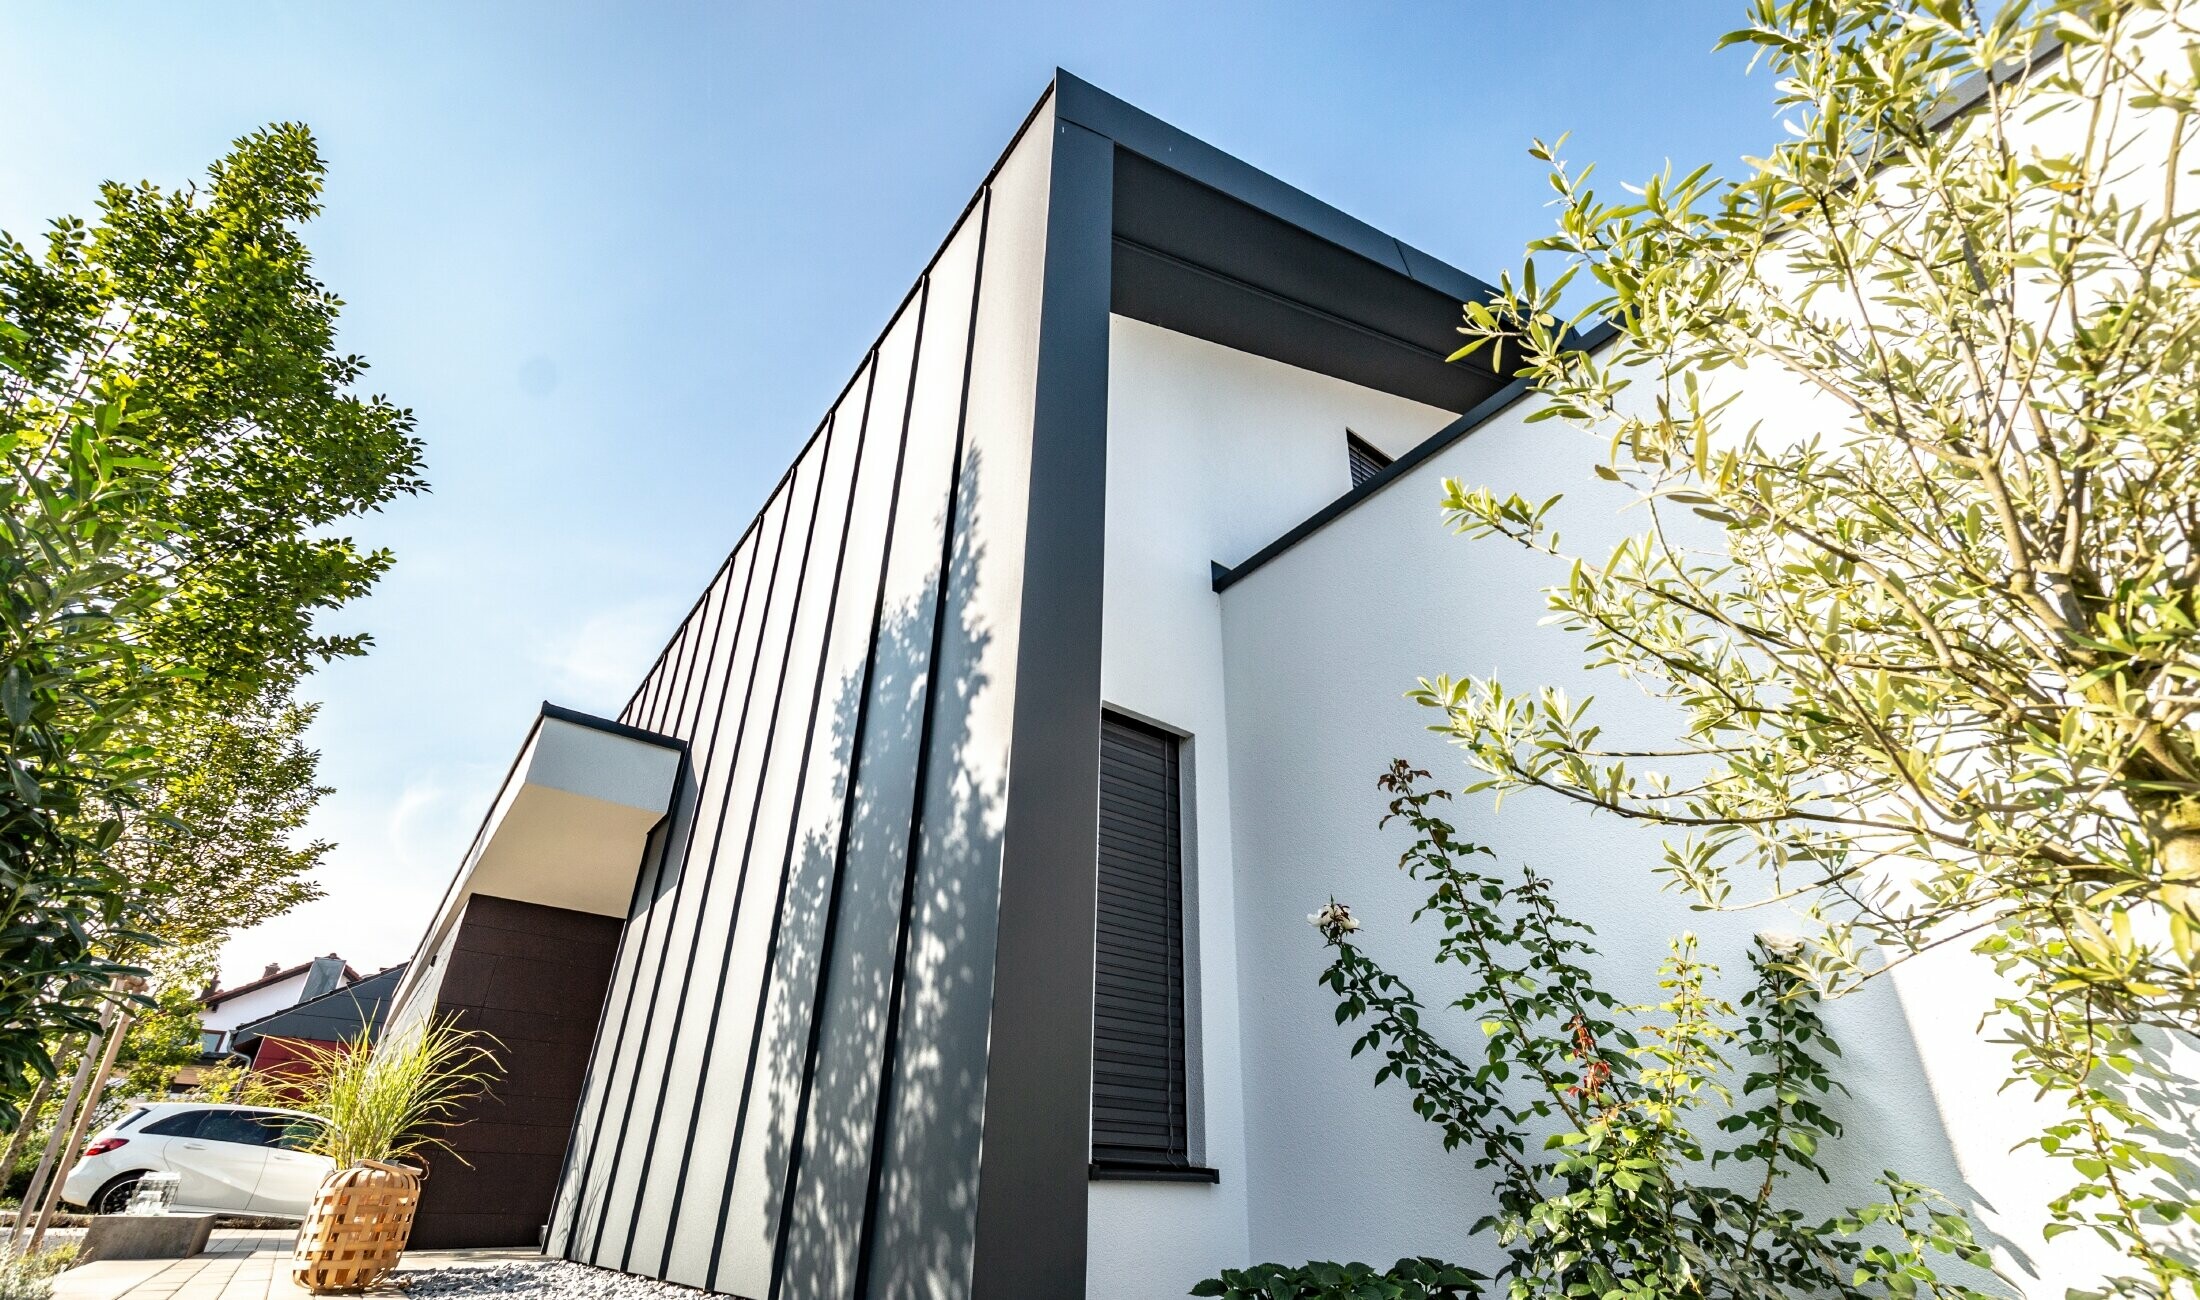 Fasada od Prefalza tvrtke PREFA u antracit boji također se proteže preko dvostrešnog krova obiteljske kuće.